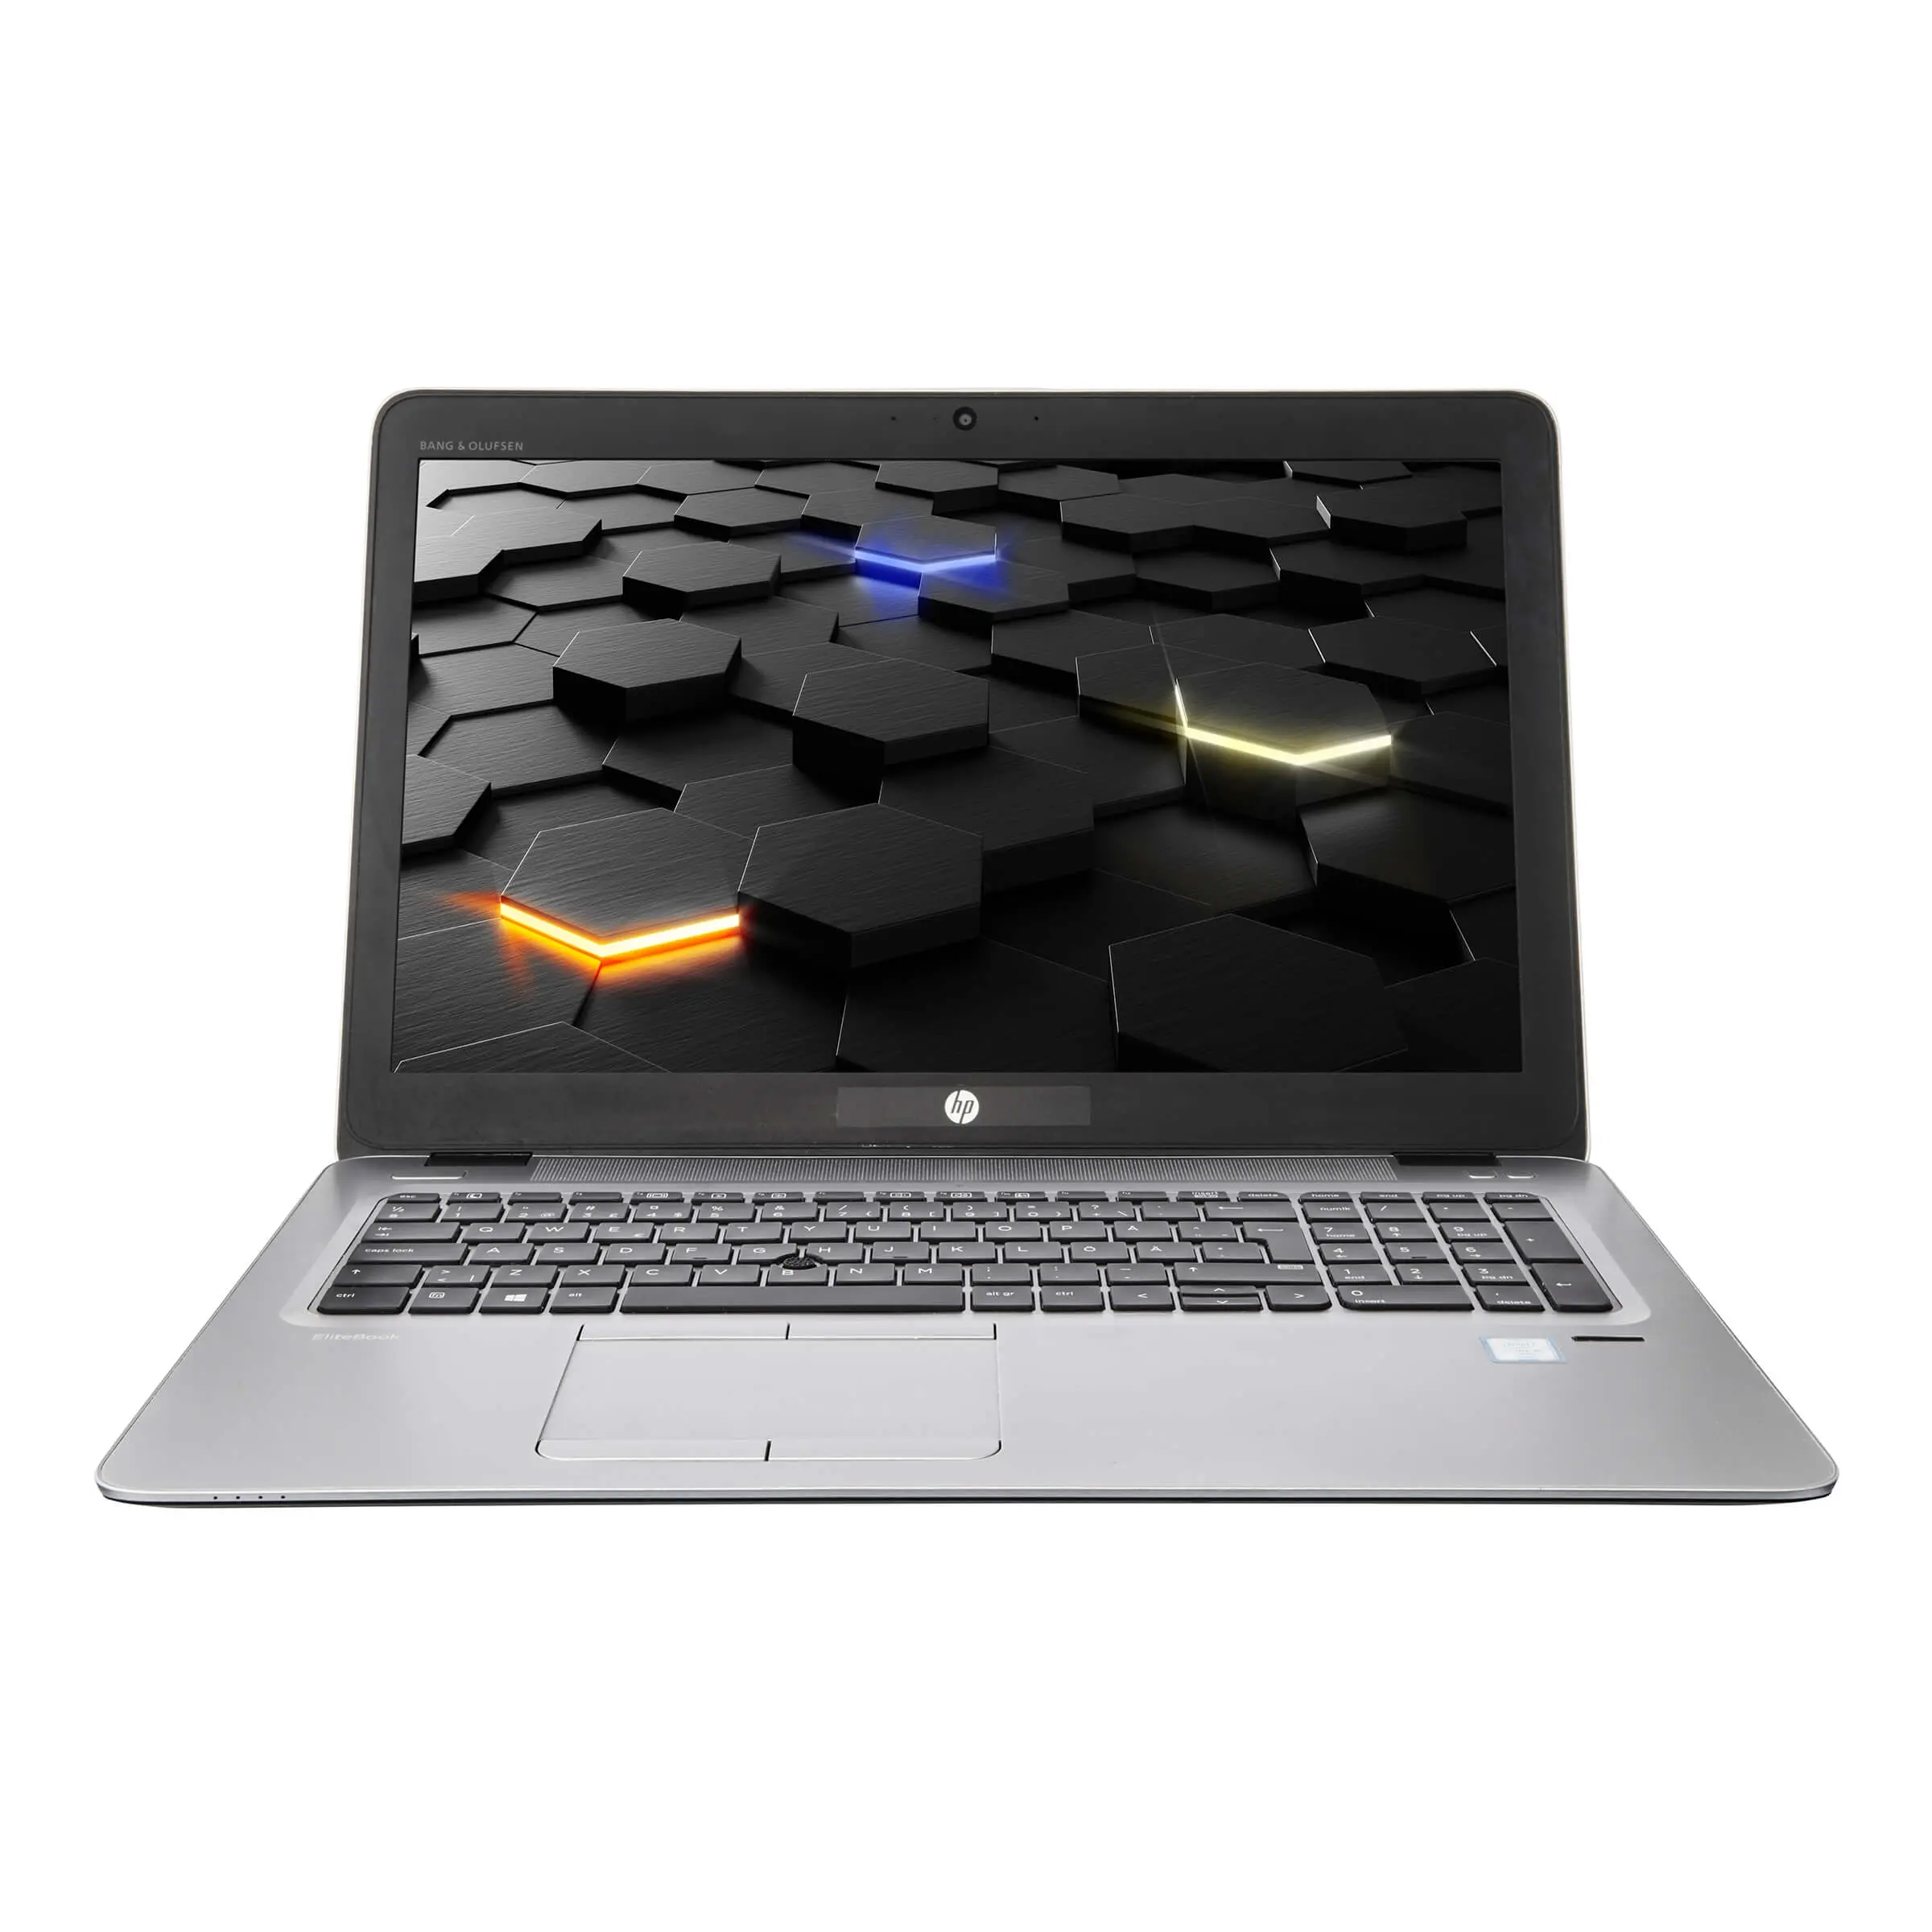 HP EliteBook 850 G3, i5, 15.6 Zoll Full-HD IPS, 32GB, 500GB SSD + 1TB HDD, LTE, beleuchtete Tastatur, Windows 10 Pro